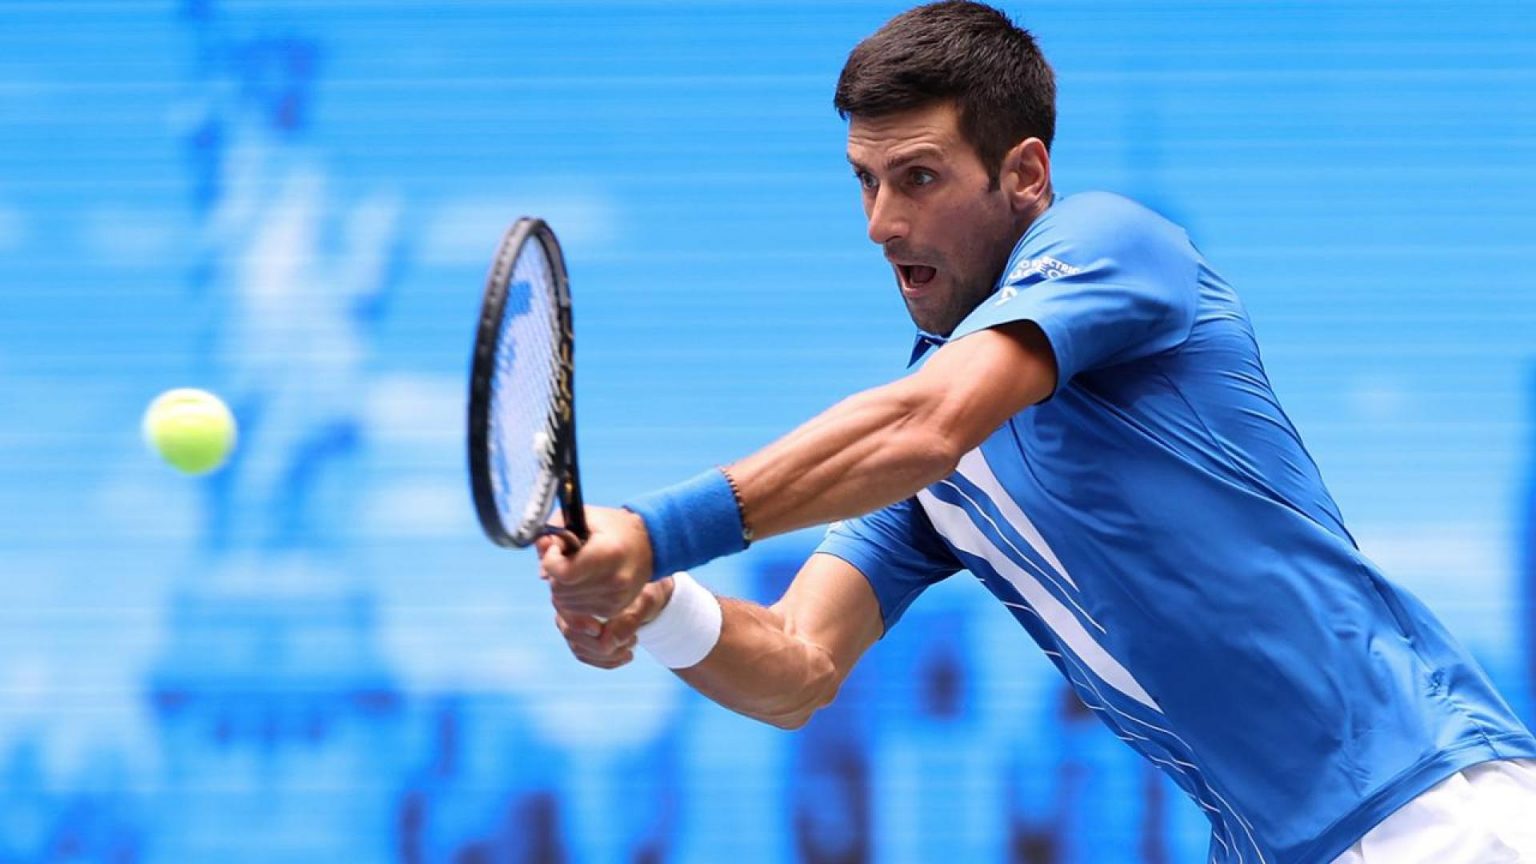 Jornal de Angola - Notícias - Ténis: Djokovic dá show no Open da Austrália